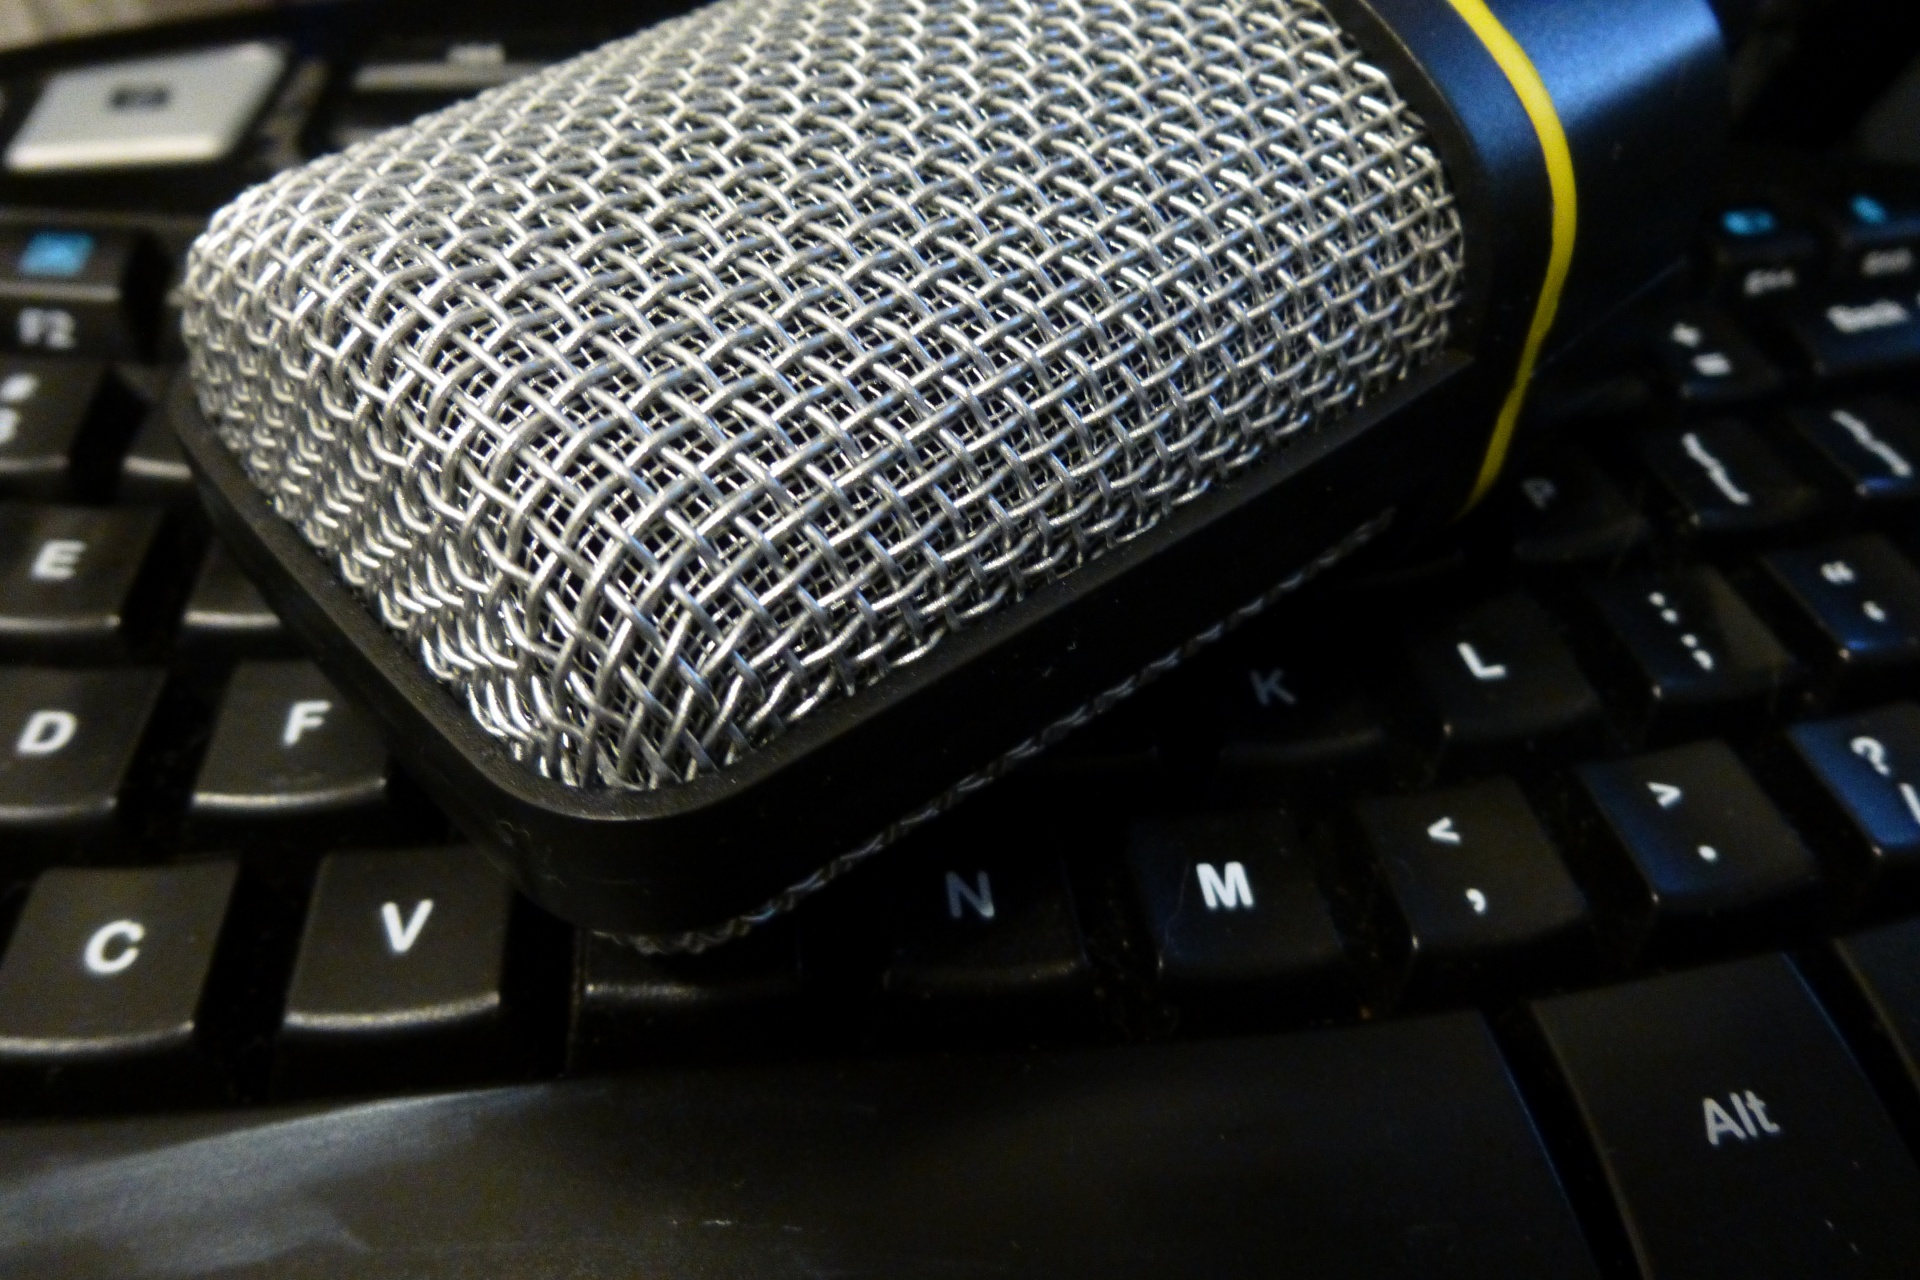 Square Mikrofon na klávesnici